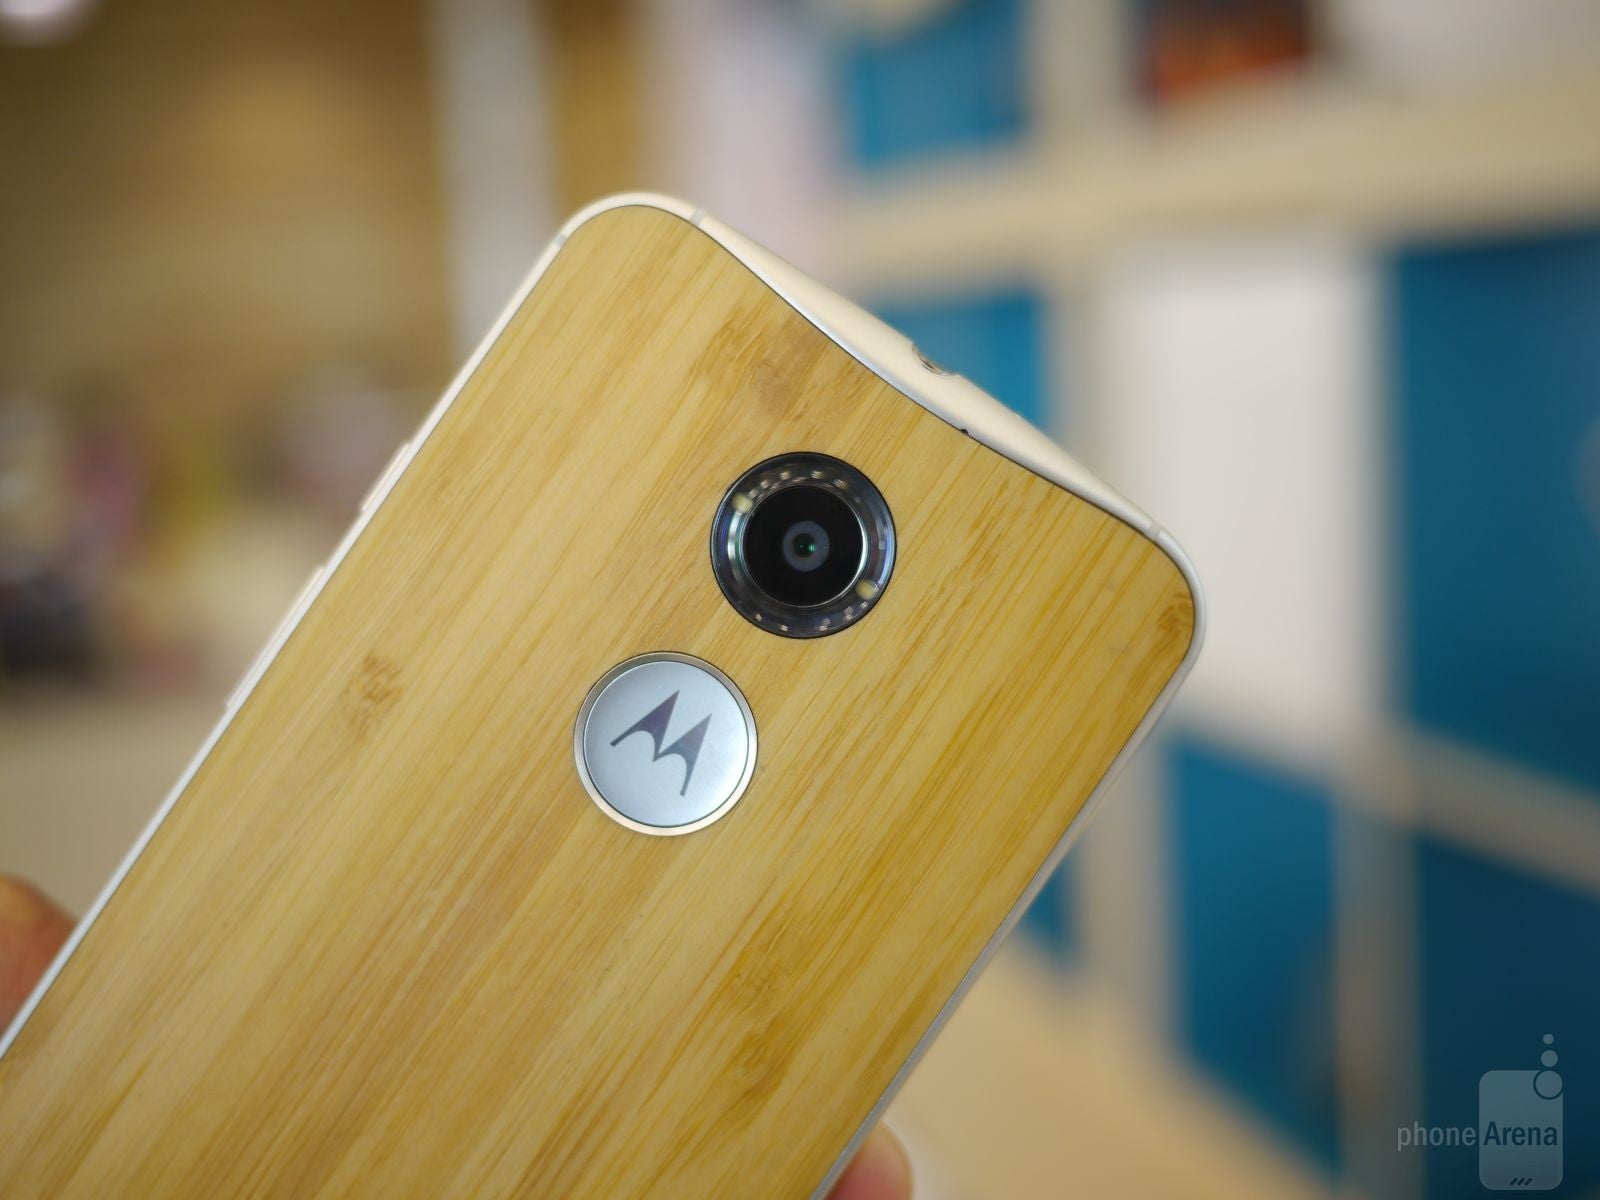 Motorola Moto X (2014) hands-on